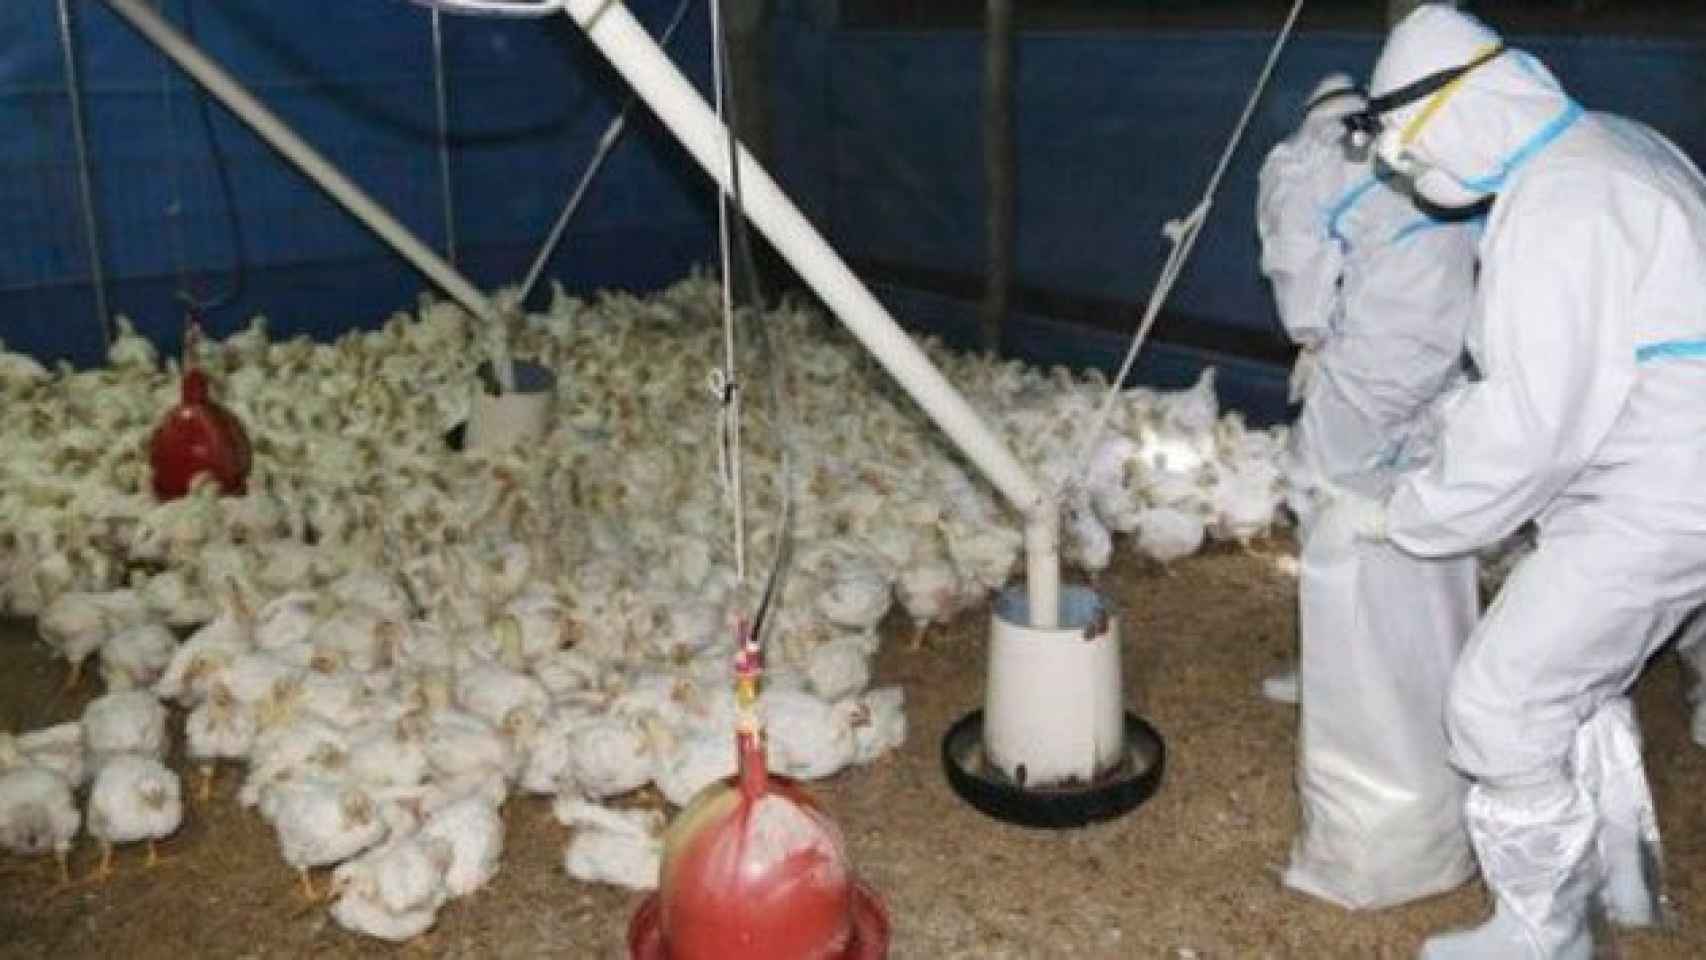 Una granja de patos contaminados por gripe aviar / AP